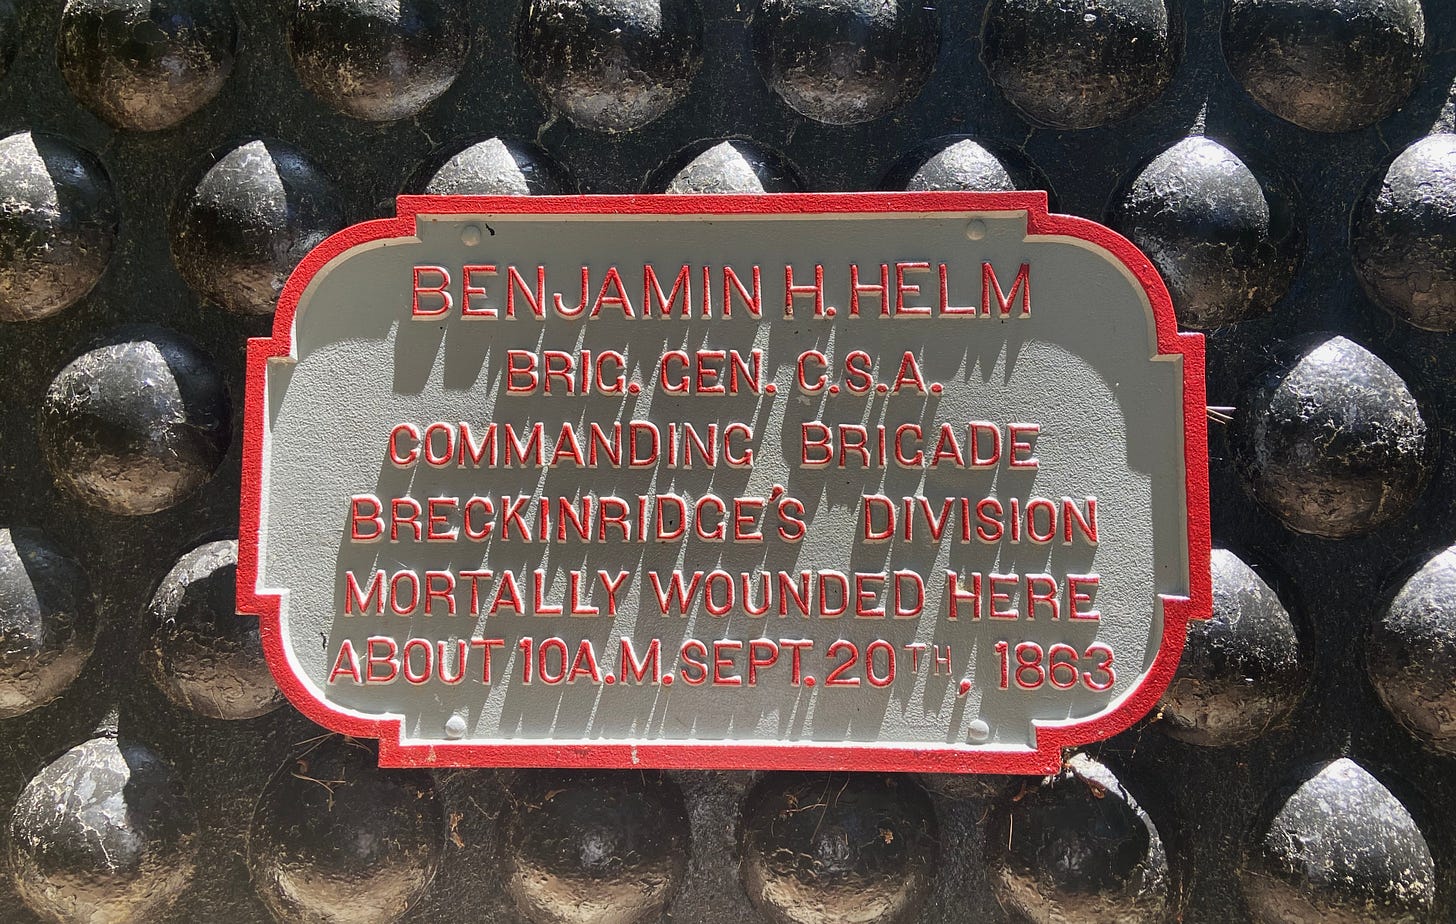 Memorial at location of Brig. General Benjamin H. Helm’s mortal wounding. Author photograph; June 20, 2022